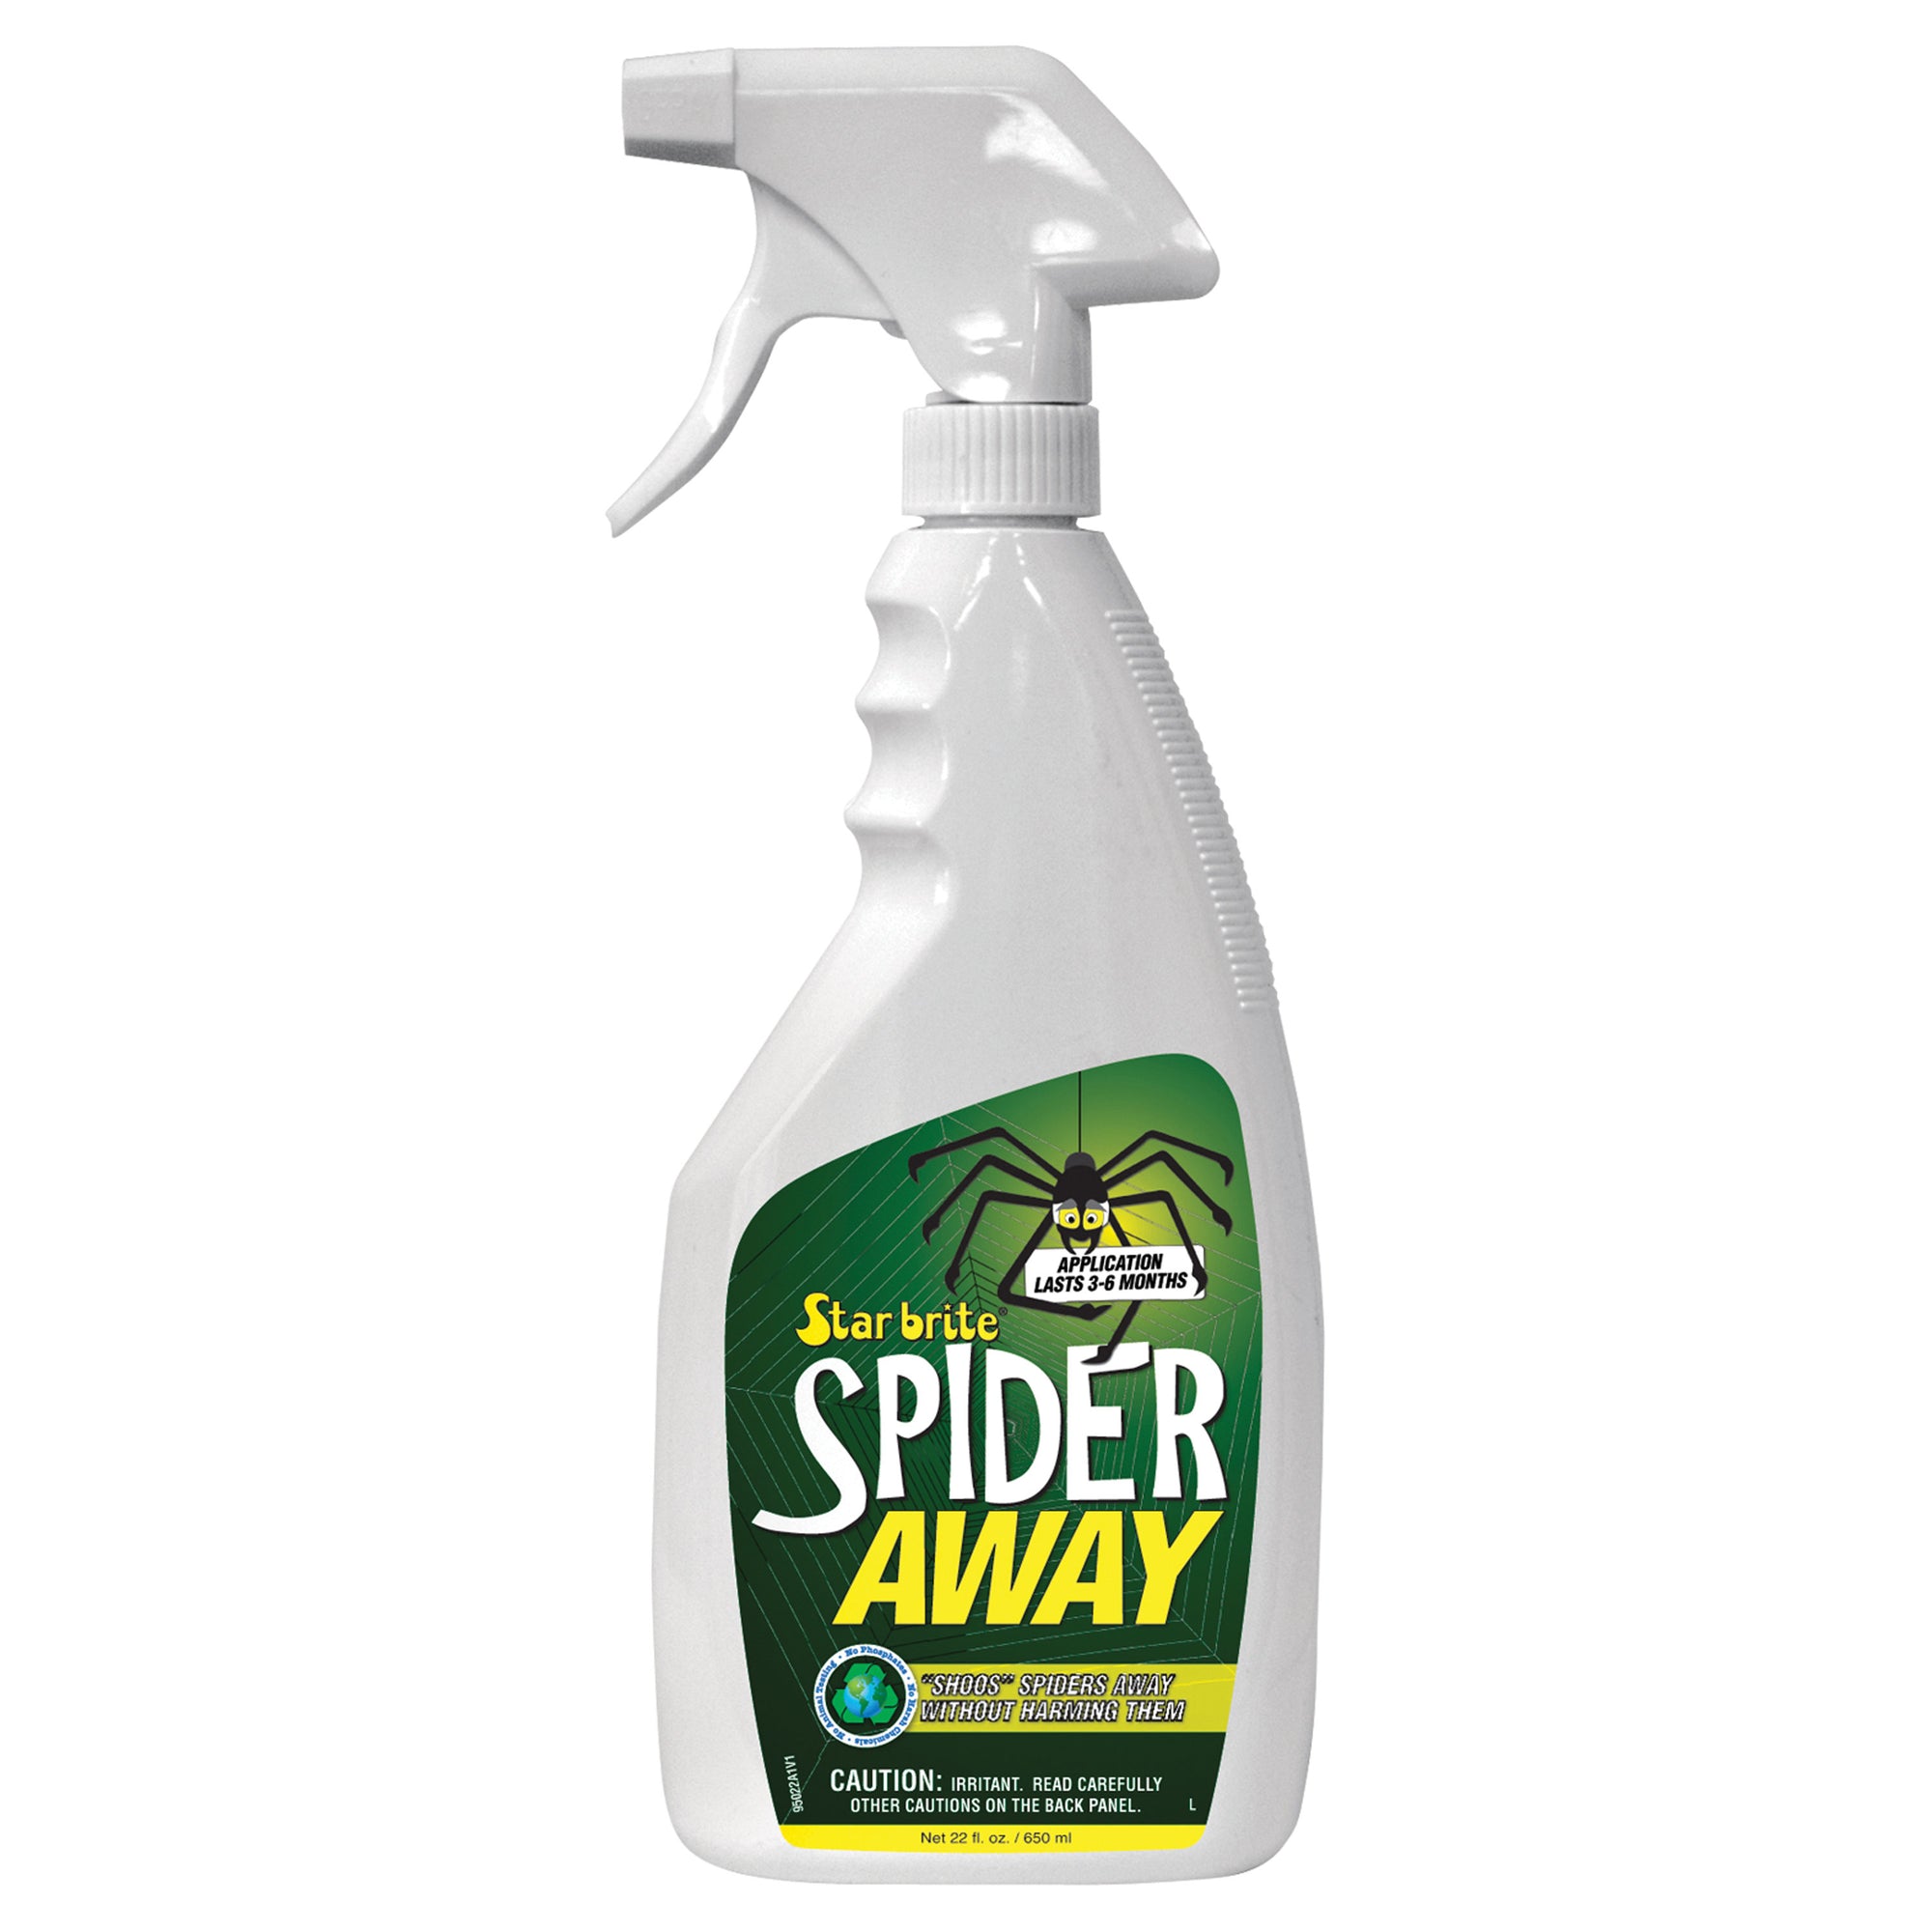 Star brite 095022P Non Toxic Spider Away Repellent - 22 oz